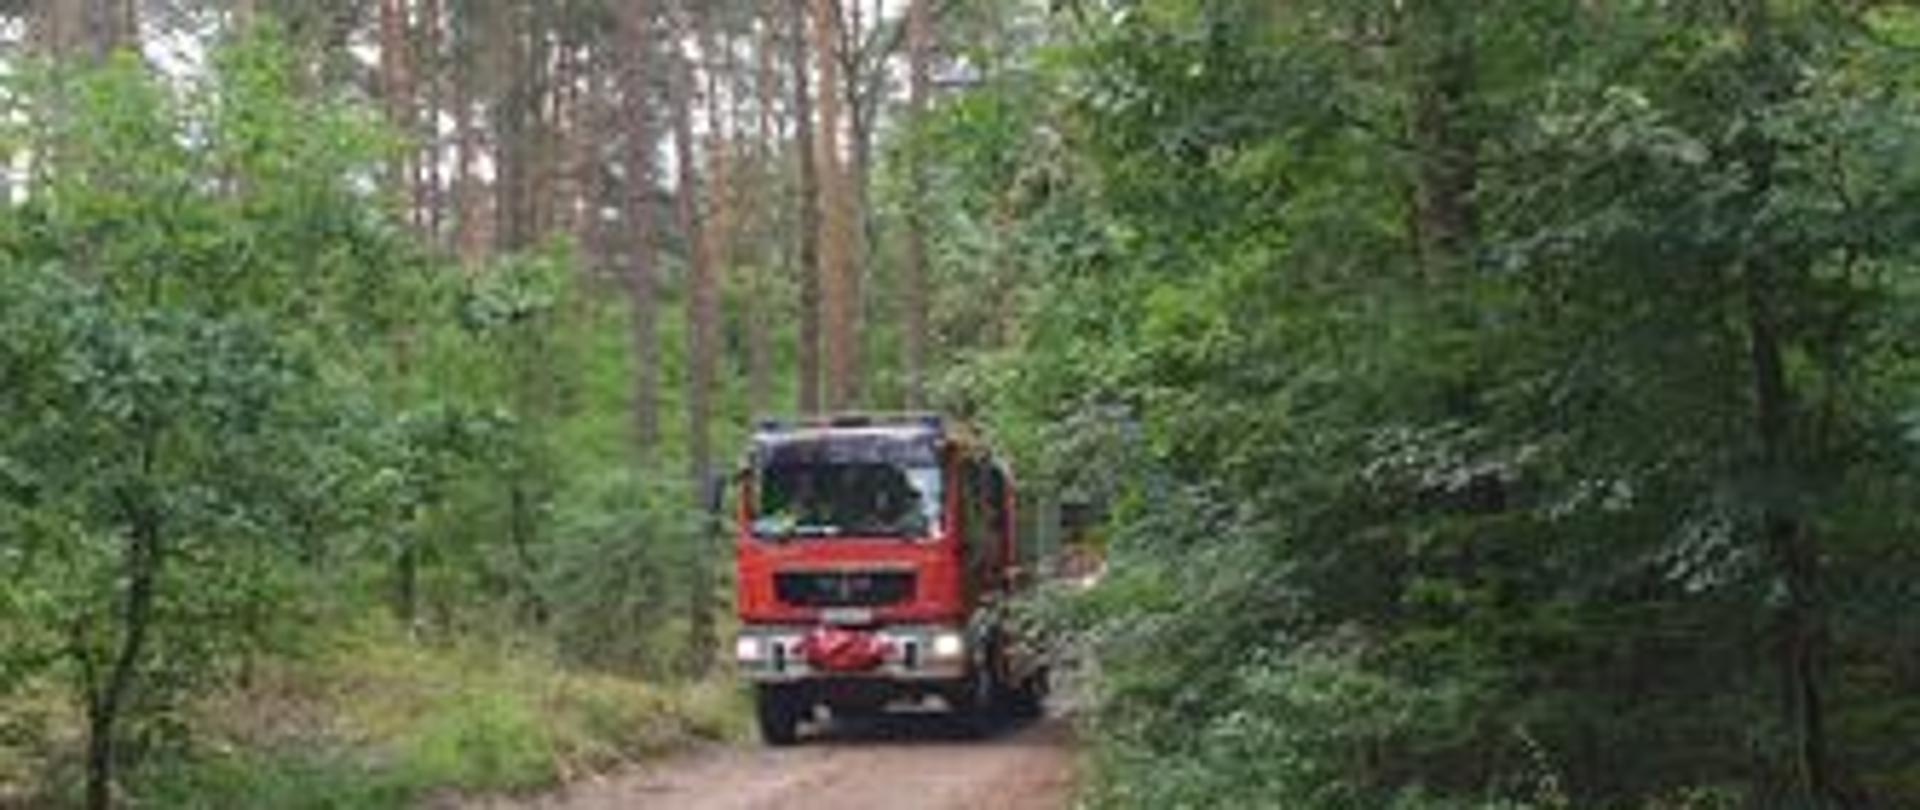 Zdjęcie przedstawia samochód pożarniczy w lesie jadący na miejsce ćwiczeń. 